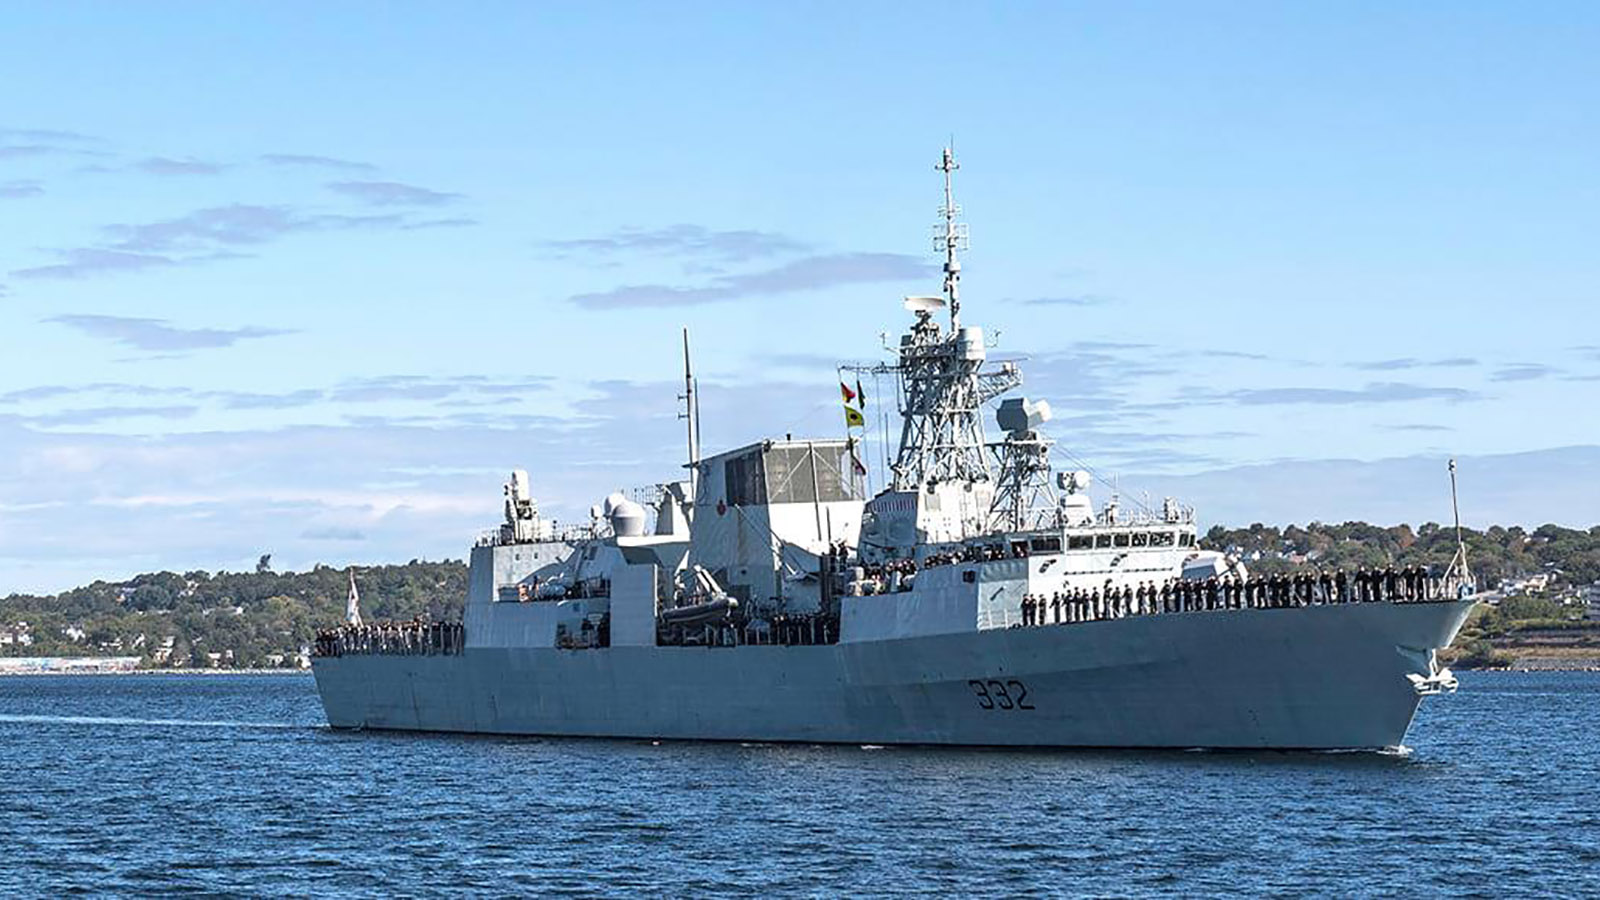 HMCS Ville de Québec